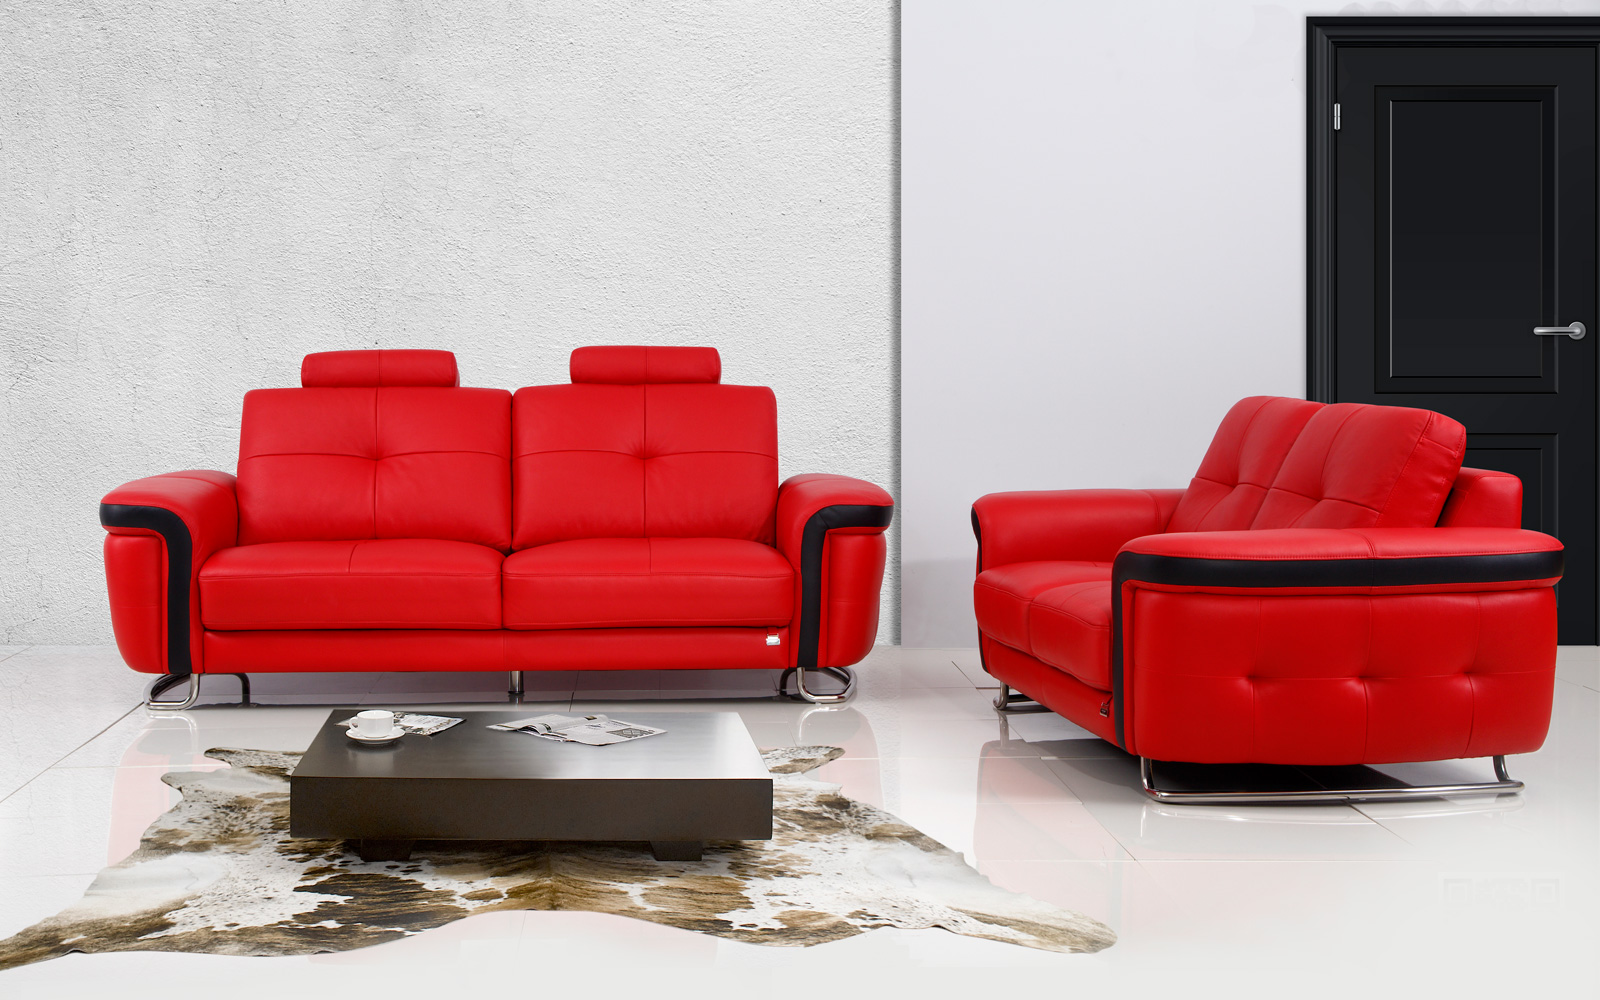 Ghế sofa băng màu đỏ độc đáo